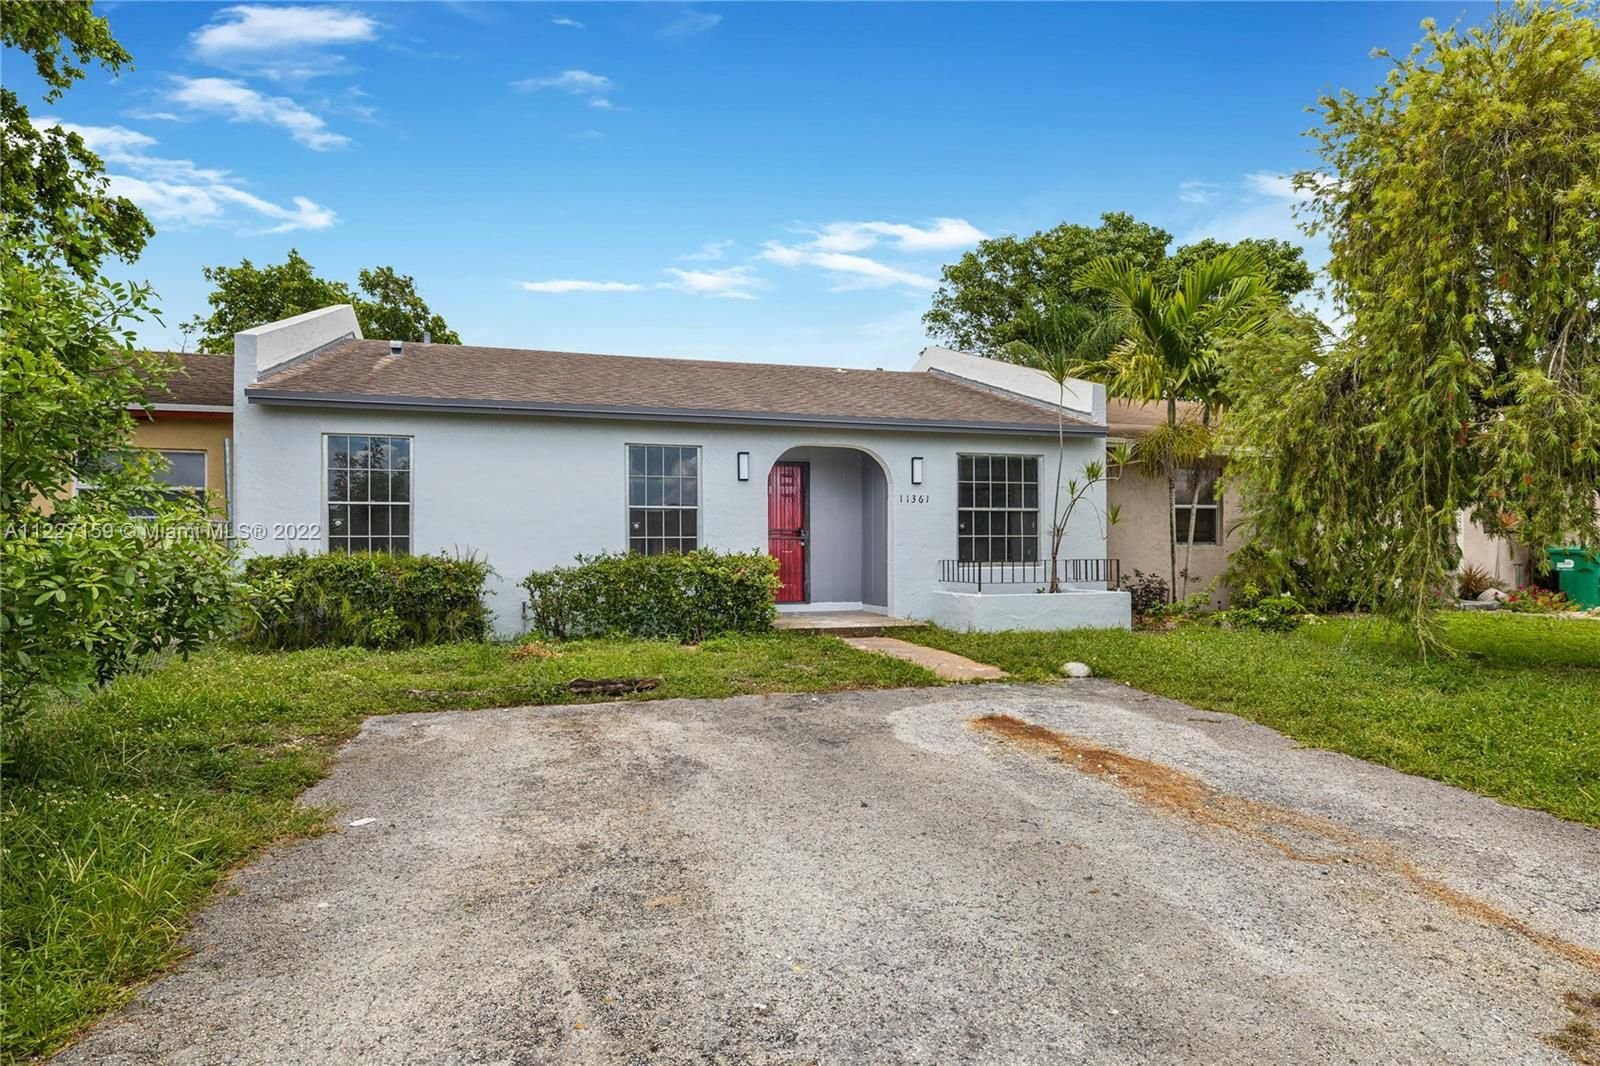 Real estate property located at 11361 Booker T Washington Blvd x, Miami-Dade County, Miami, FL